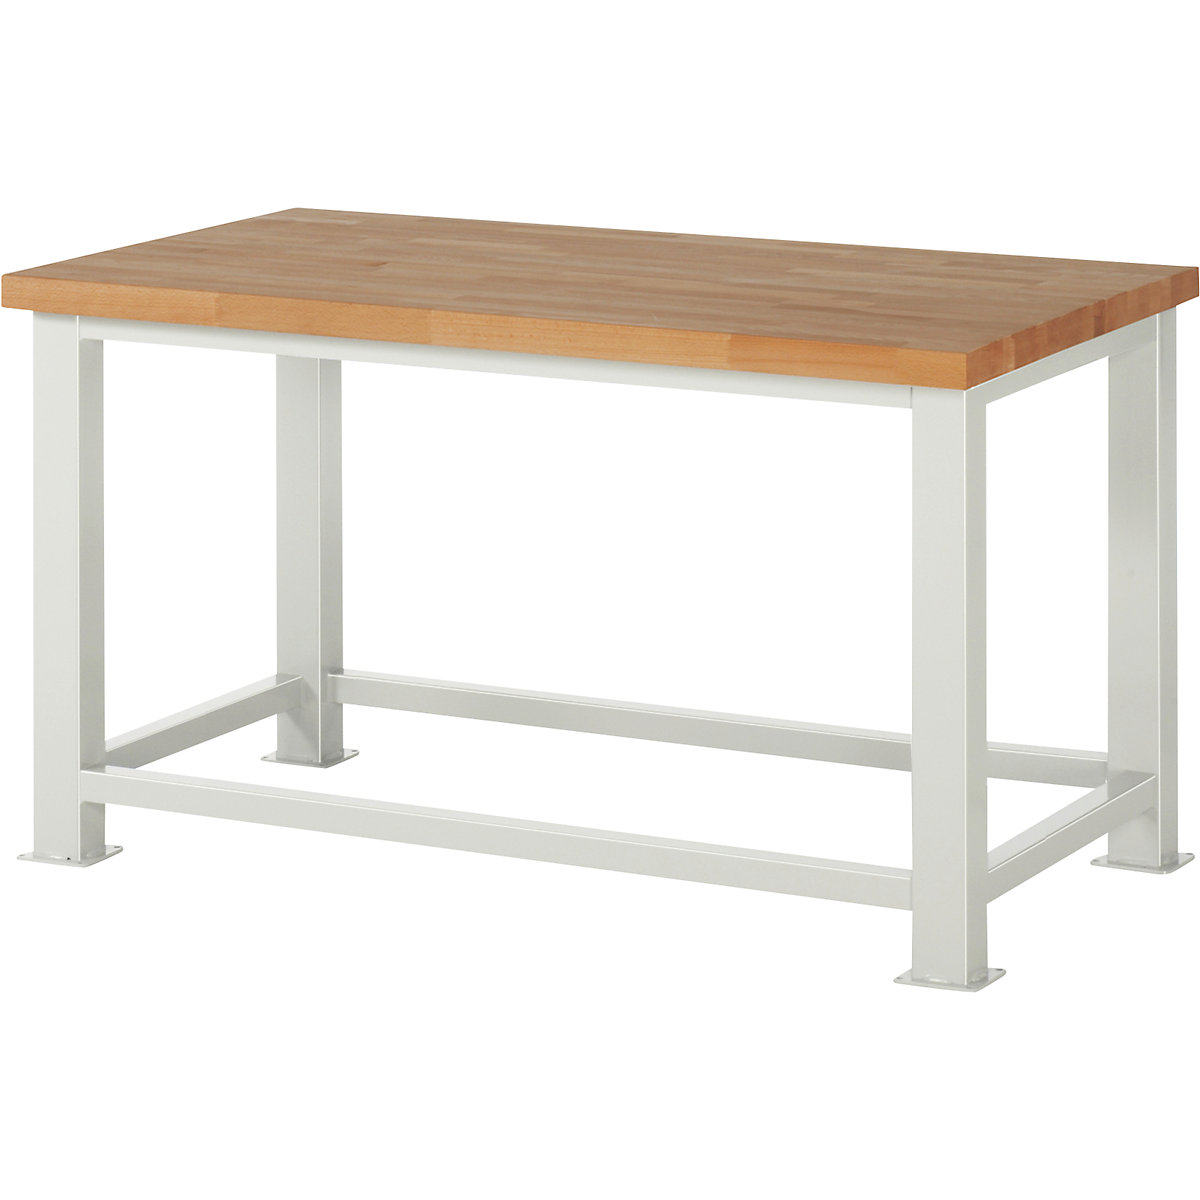 Stół warsztatowy do dużych obciążeń – RAU, grubość blatu: 50 mm, szer. x głęb. 1500 x 900 mm-5